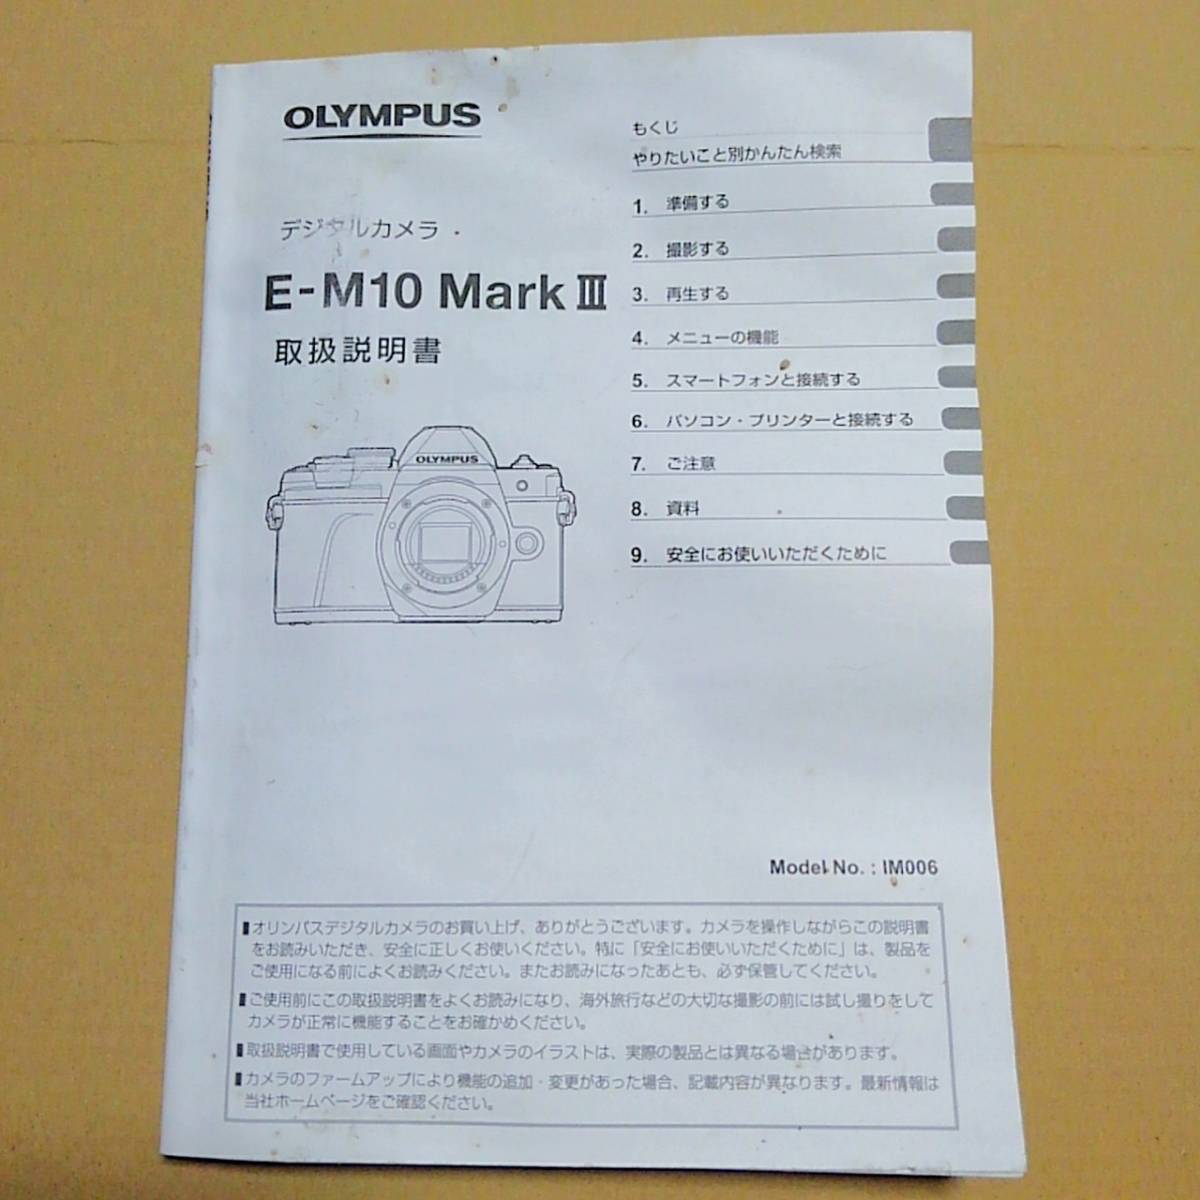  стоимость доставки 180  йен ● Olympus  E-M10 Mark III  руководство по эксплуатации /... руководство    инструкция 